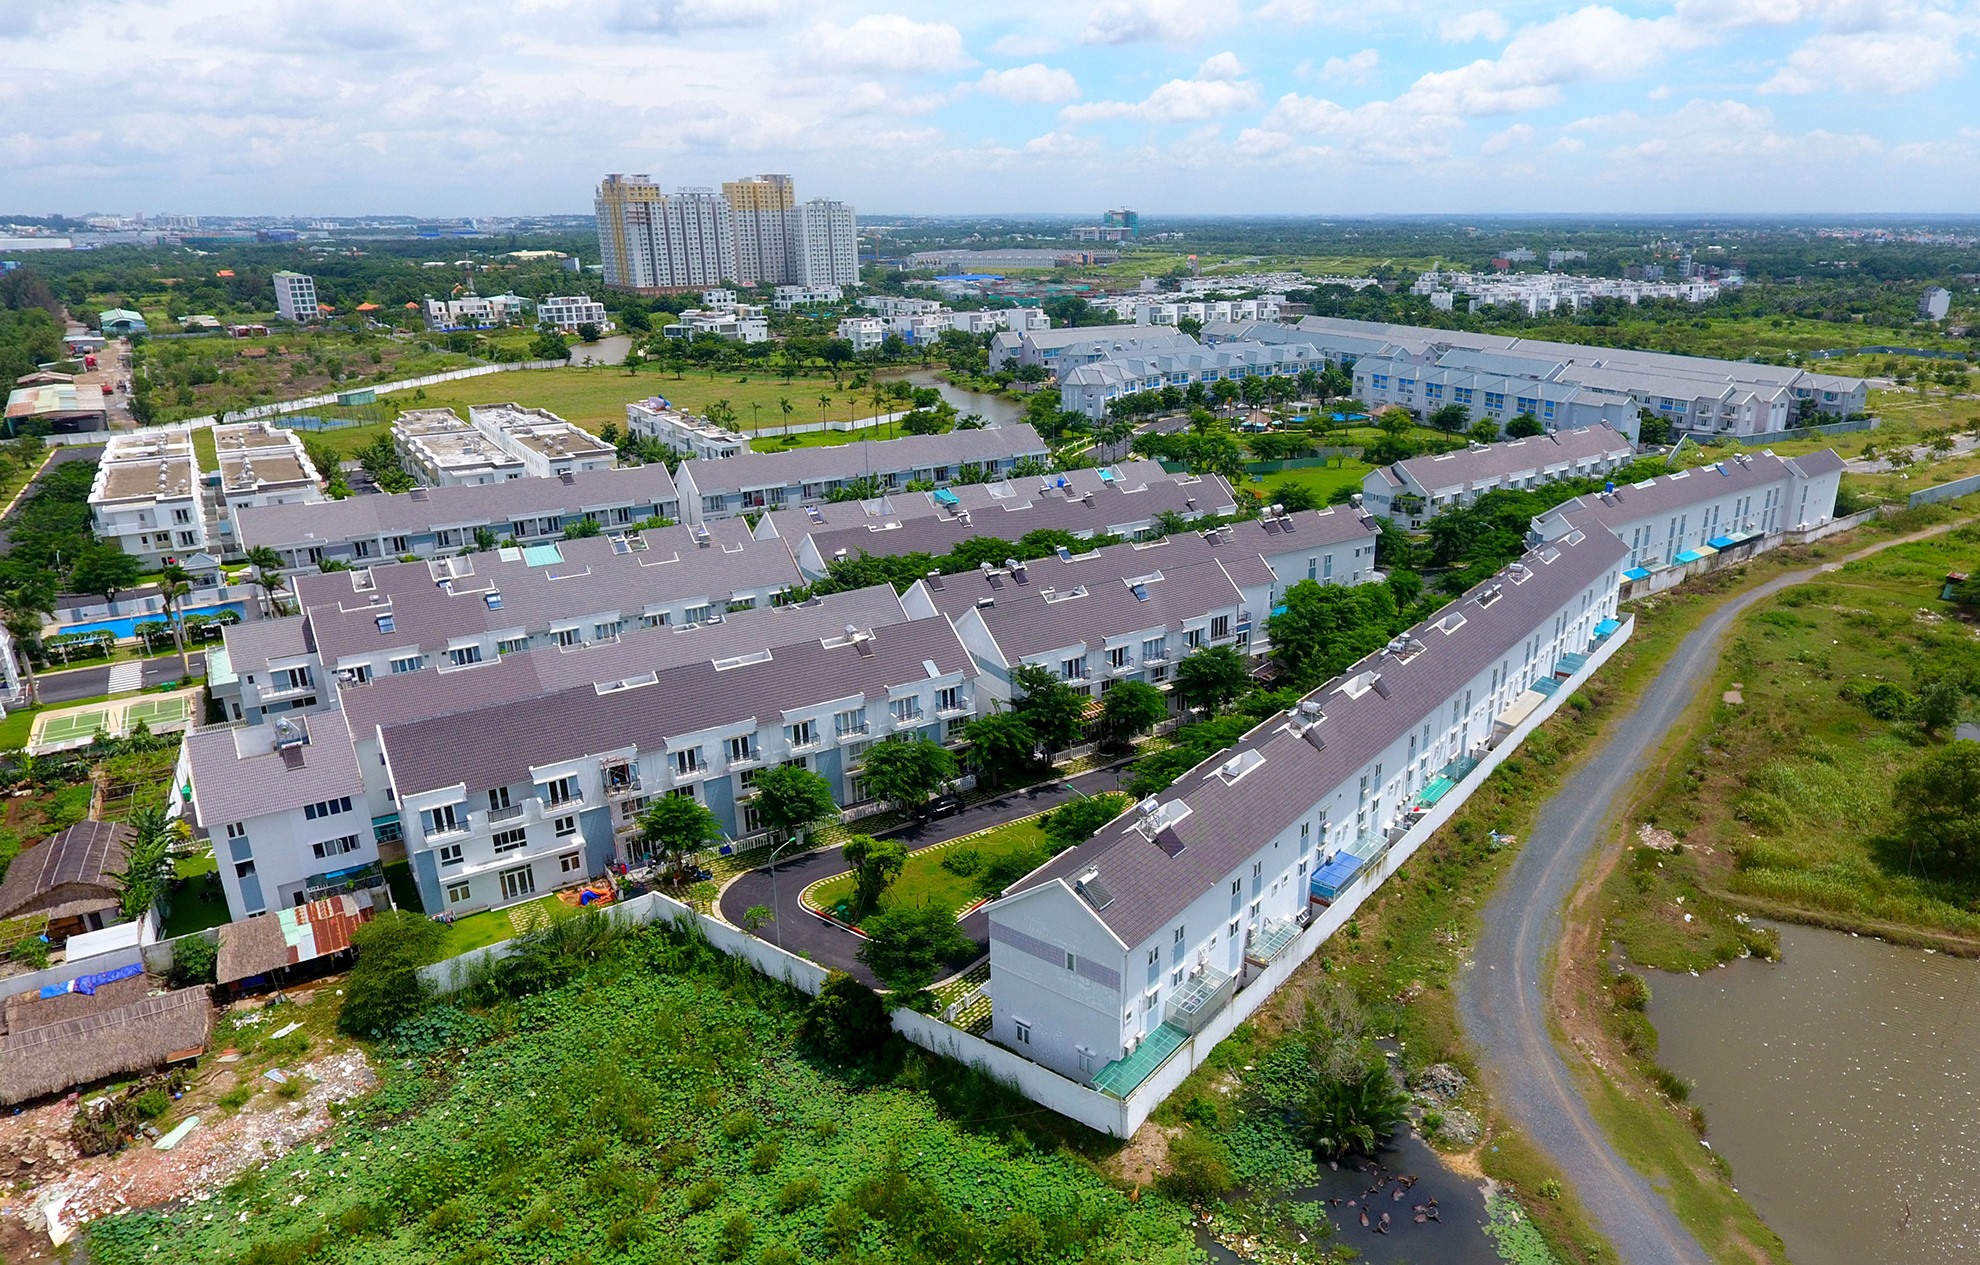 
Bộ trưởng Phạm Hồng Hà cho rằng thị trường đang có biểu hiện dư thừa bất động sản cao cấp, biệt thự, resort…
